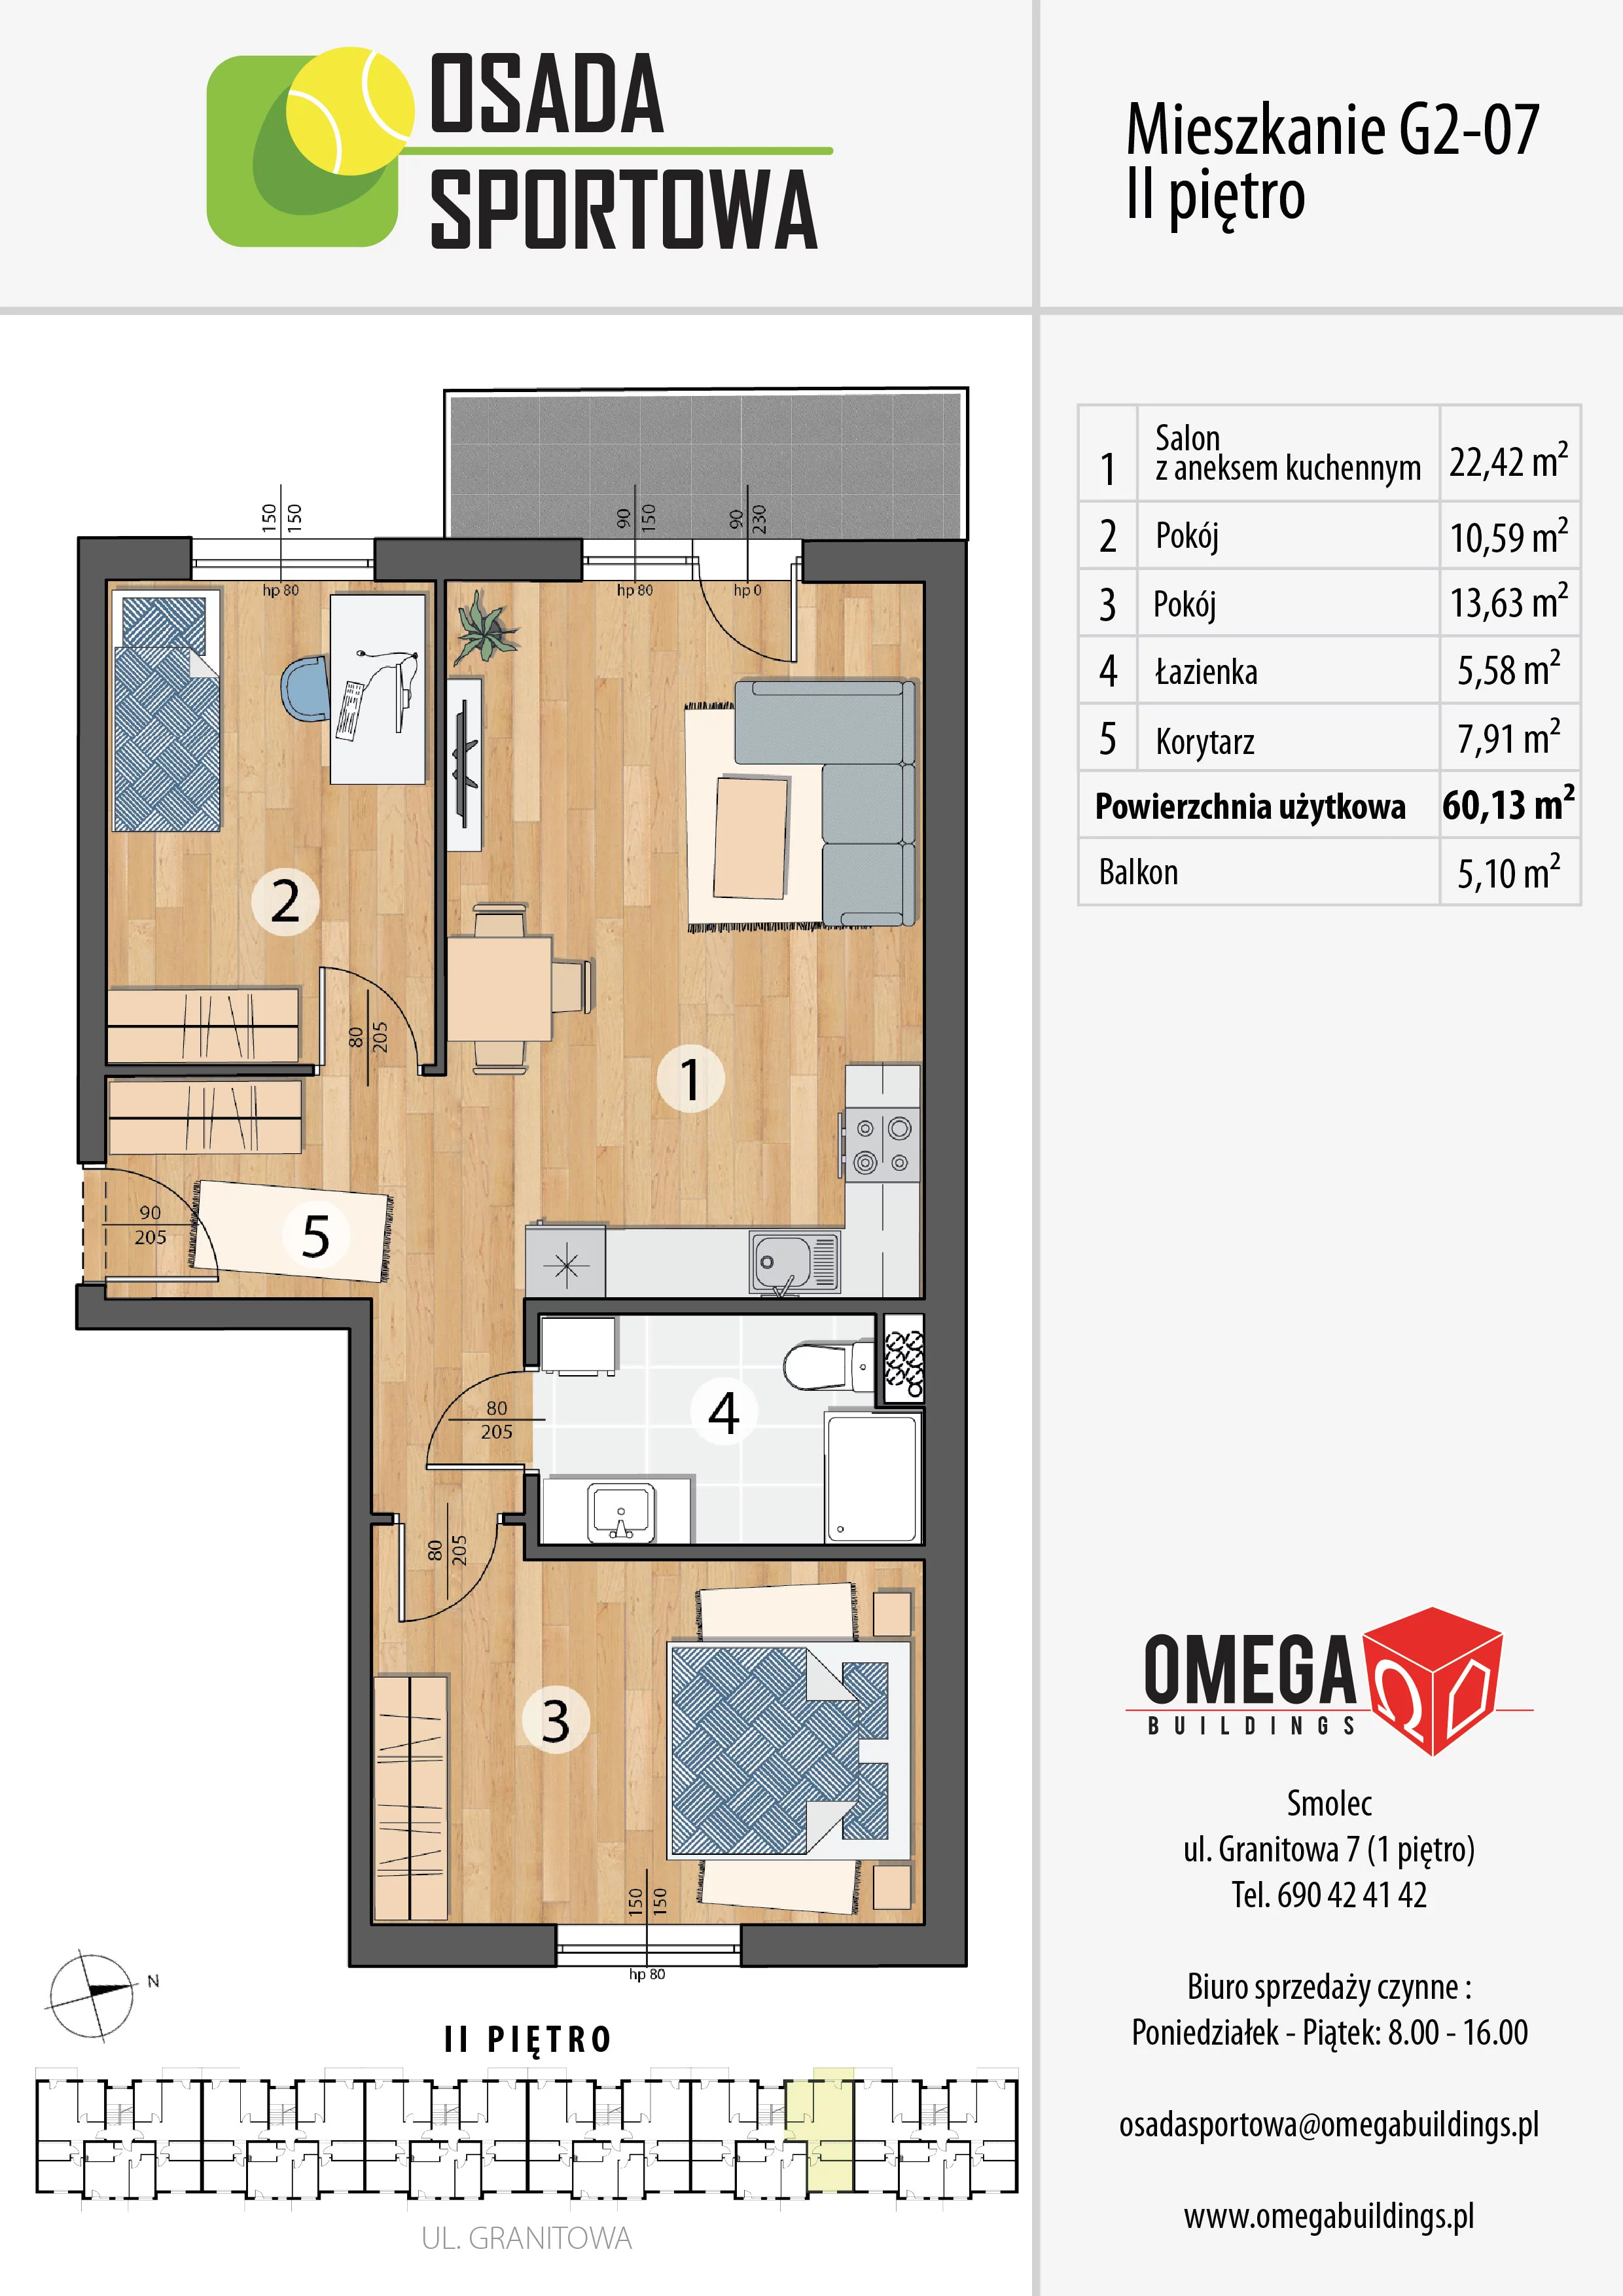 Mieszkanie 60,13 m², piętro 2, oferta nr G2-07, Osada Sportowa Budynek G, Smolec, ul. Granitowa 52-62